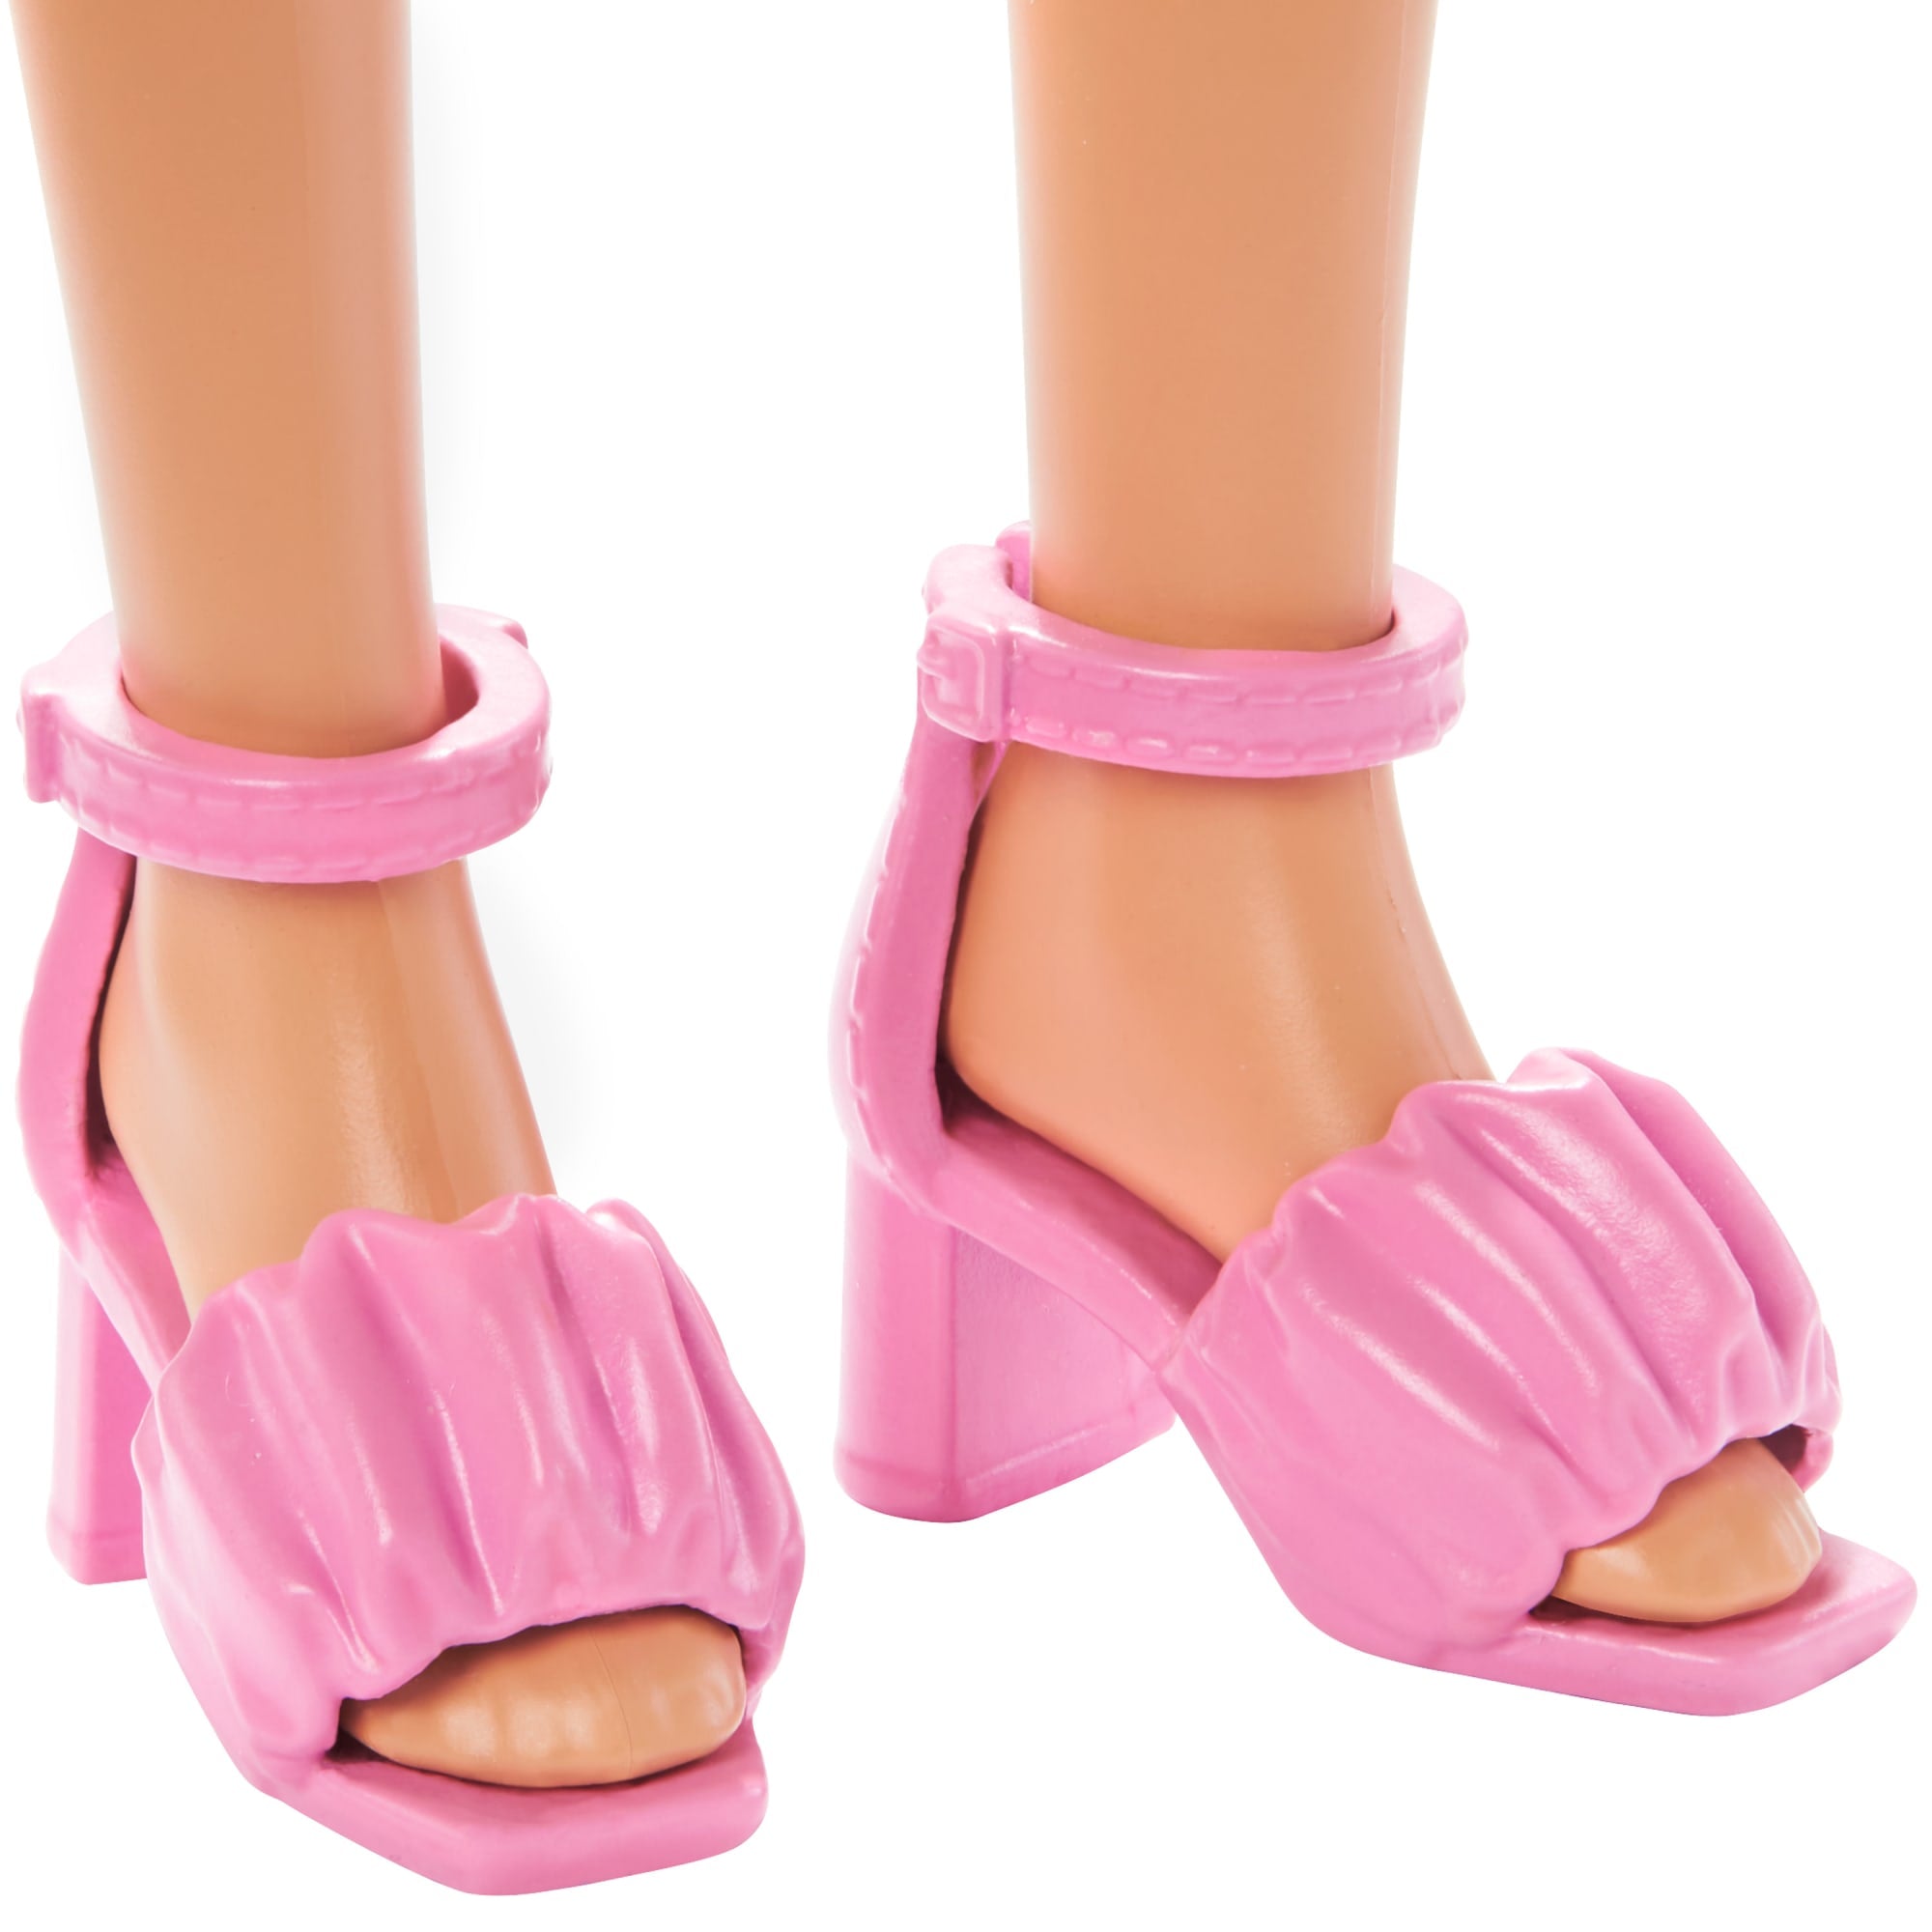 Mochila Barbie grande 18″ - 35619 by Barbie • Gemafer